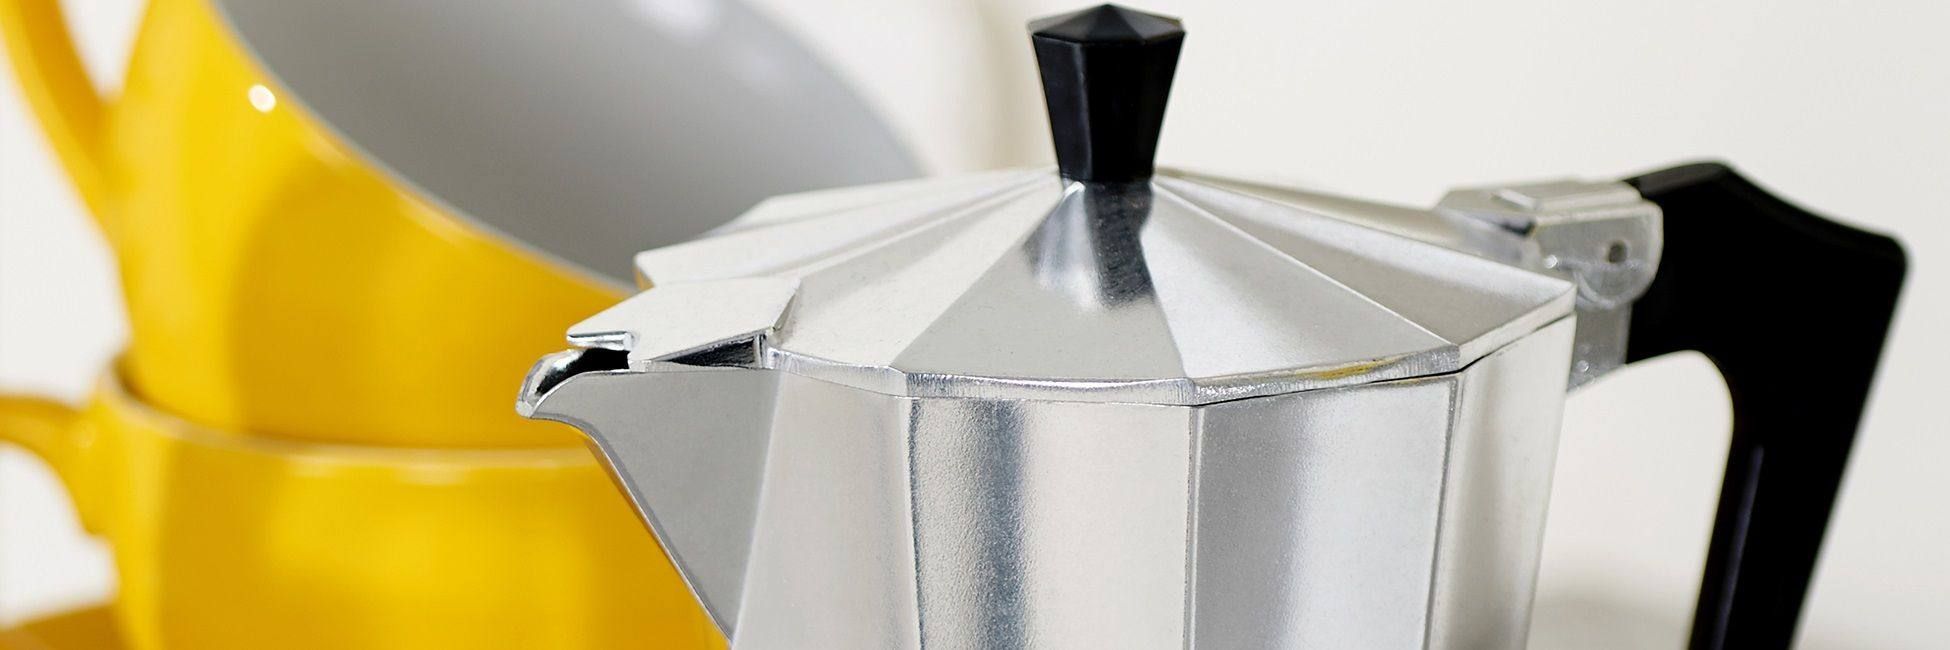 Як вибрати гейзерну кавоварку: варимо насичену каву по-італійськи